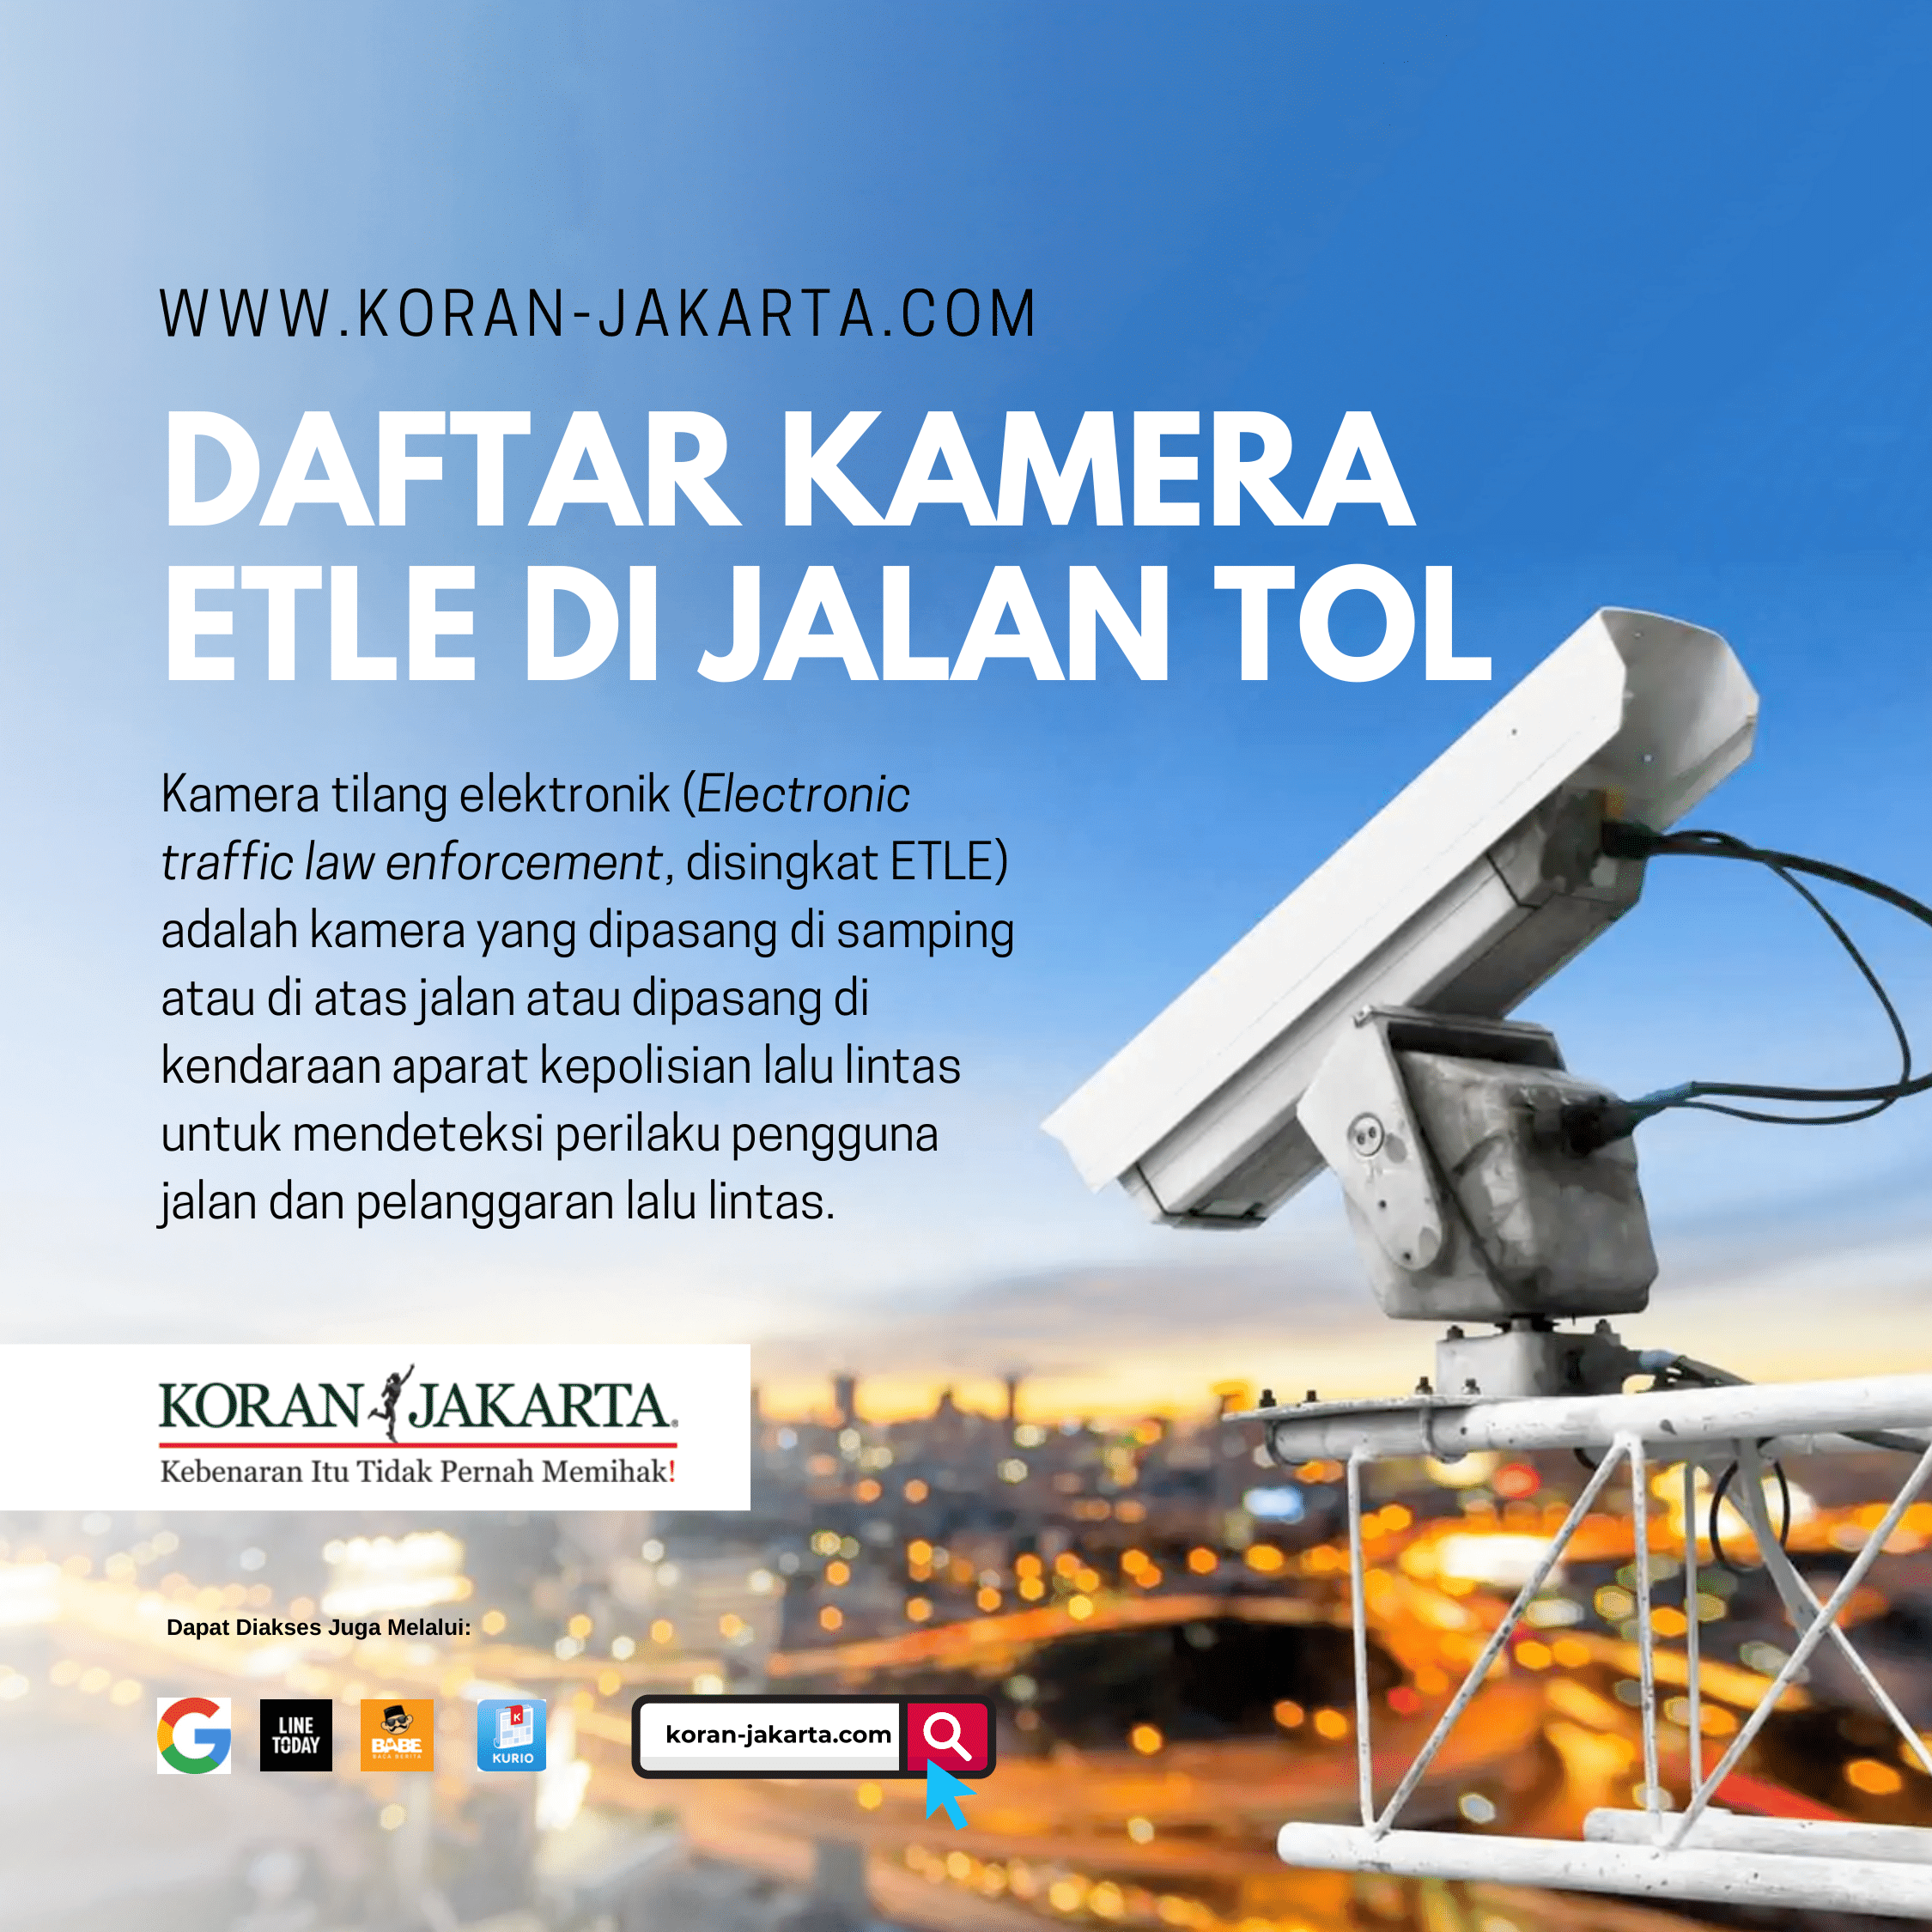 Daftar Kamera ETLE di Jalan Tol